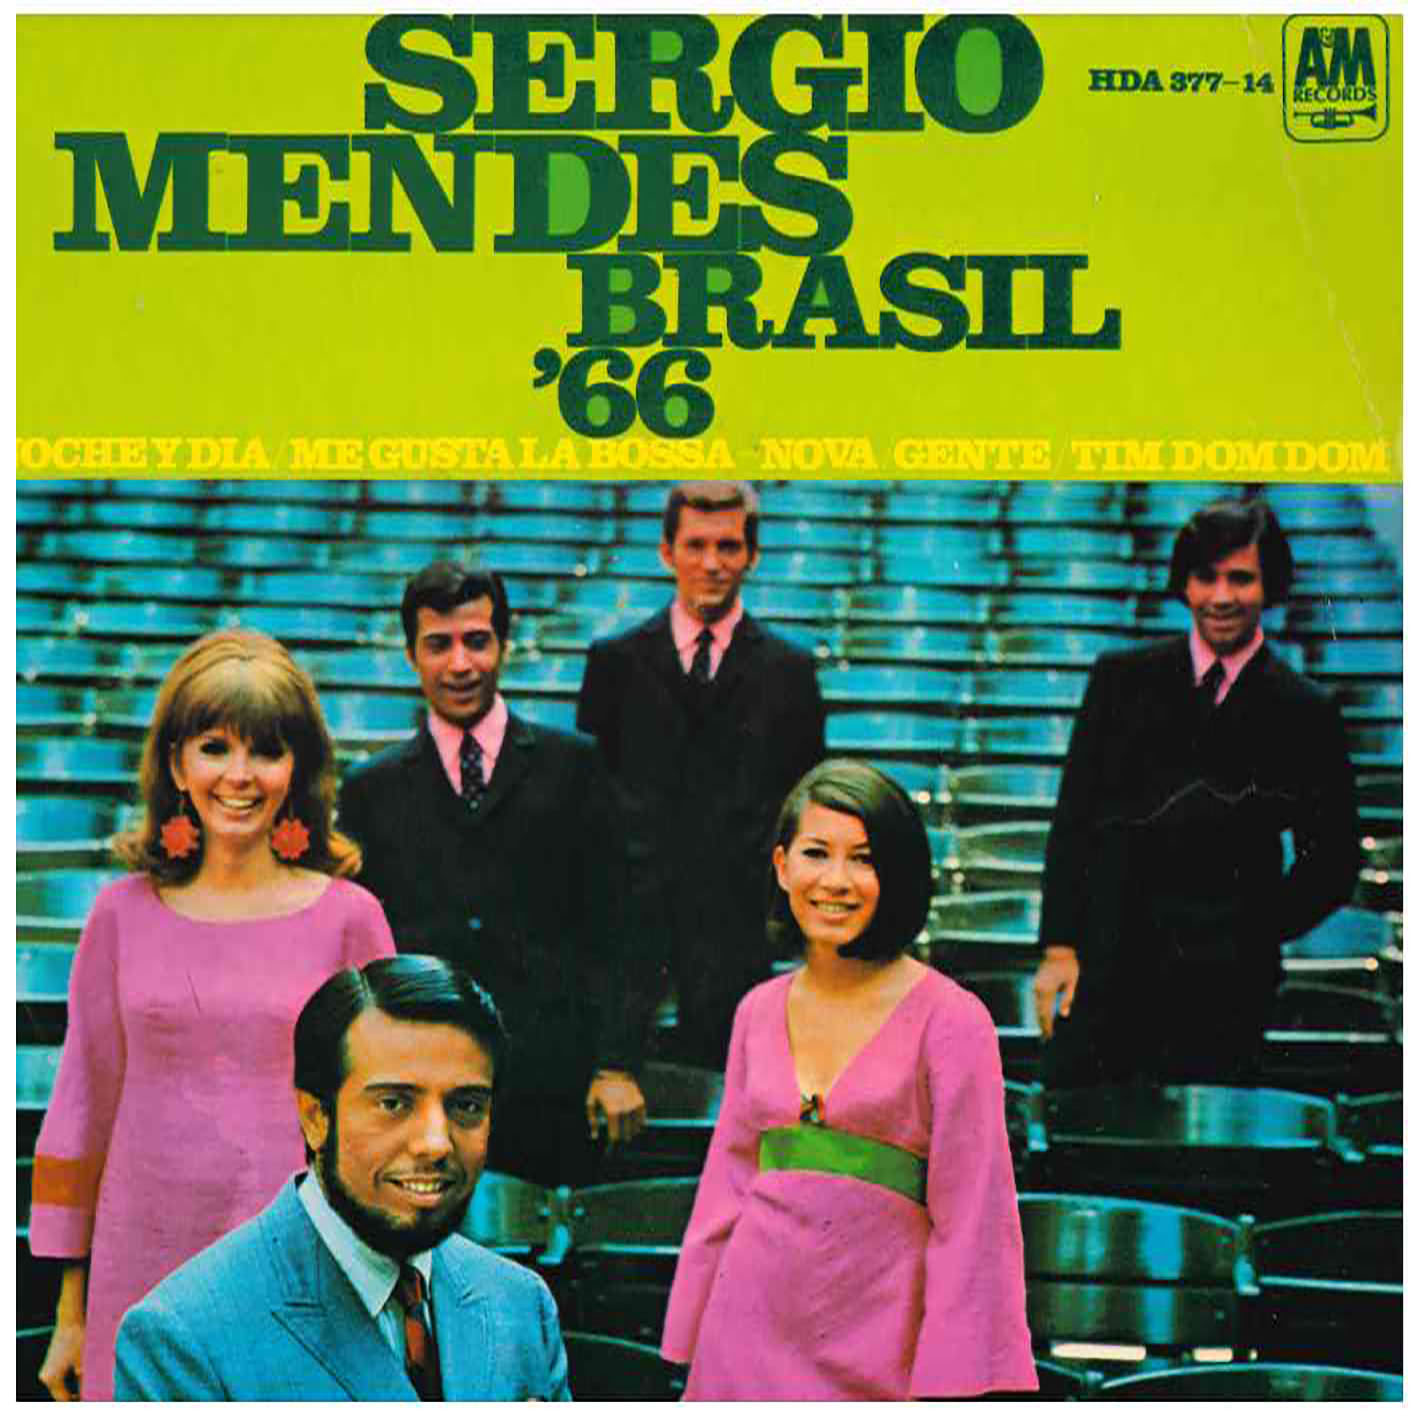 Sergio Mendes Brasil `66 – Noche Y Dia / Me Gusta La Bossa-Nova / Gente / Tim Dom Dom